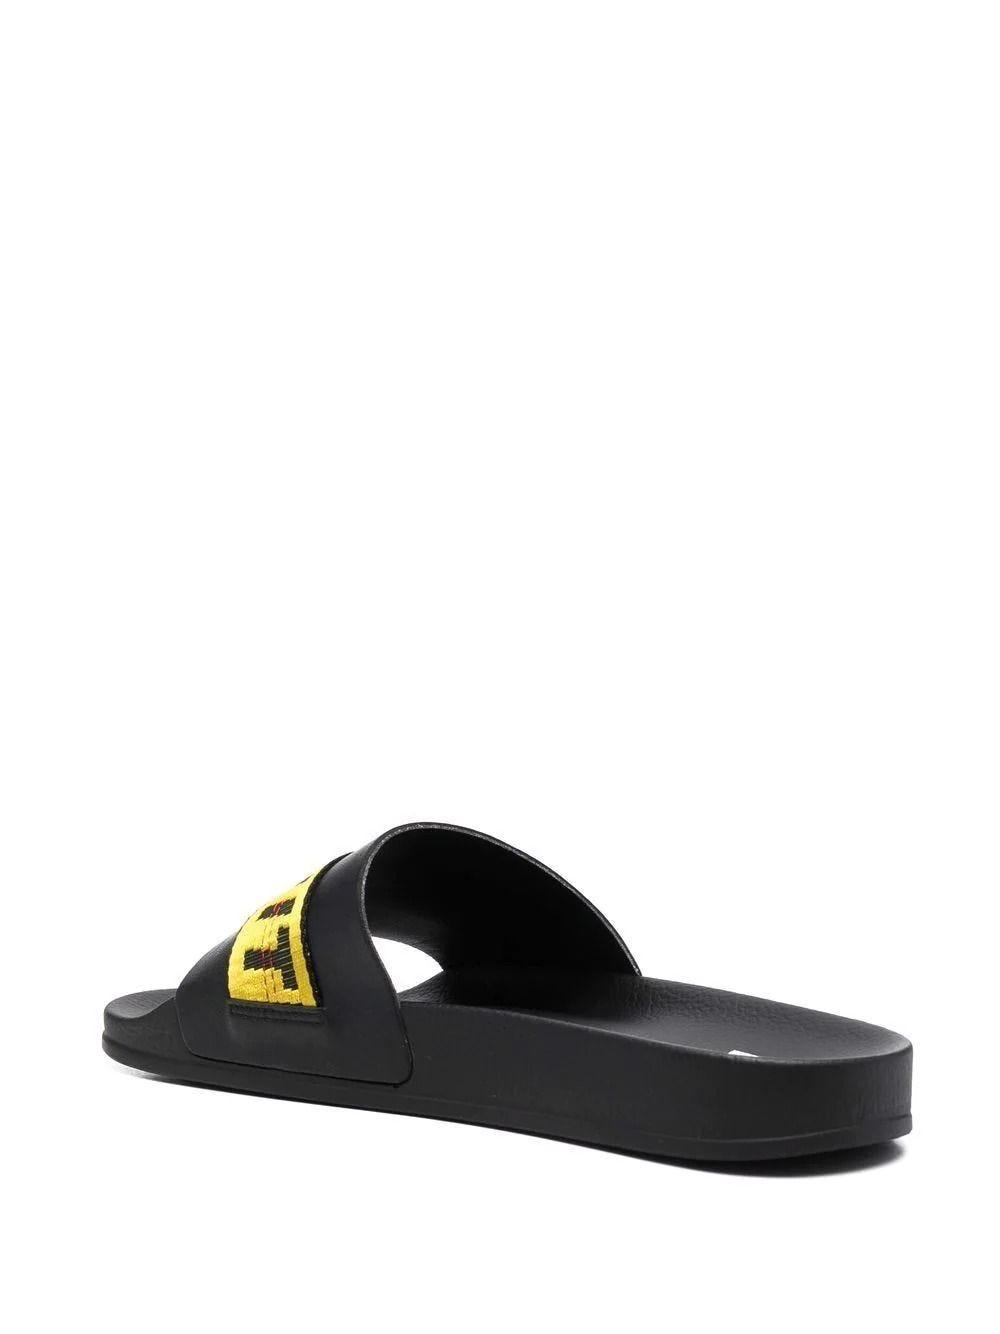 Mens Shoes Sandals Off-White c/o Virgil Abloh Logo Print Black Industrial Slides Sandals for Men slides and flip flops 